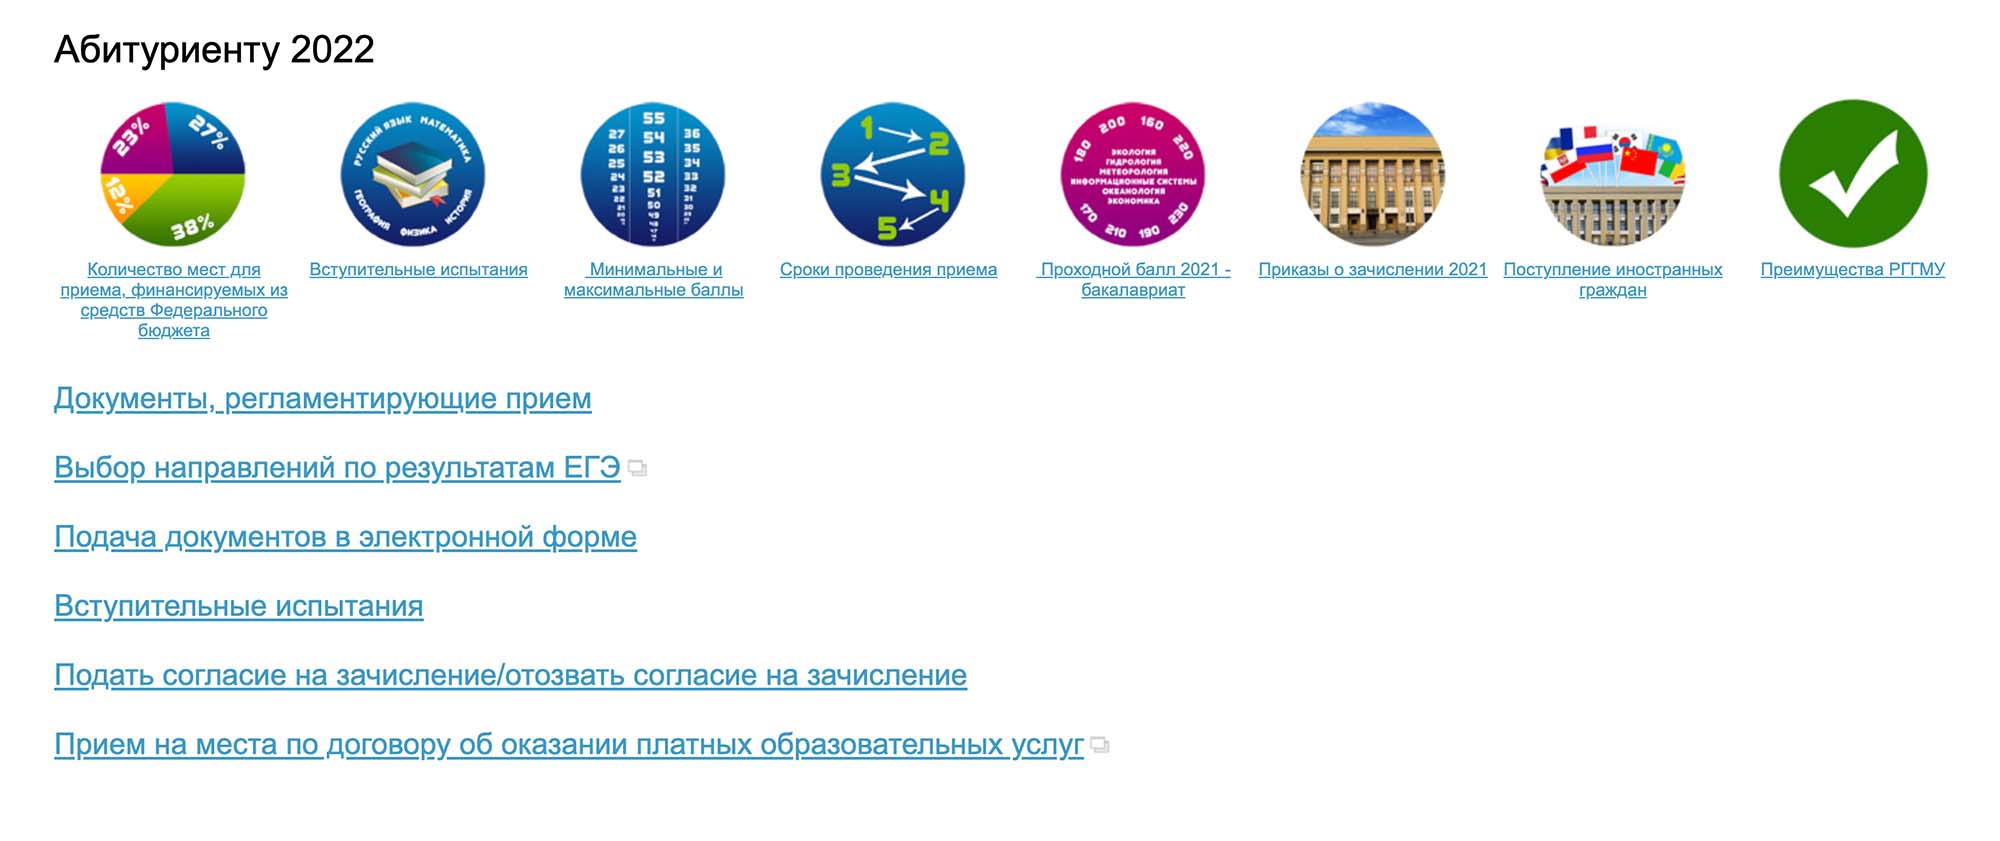 На сайте РГГМУ прикреплены шаблоны согласий и заявлений, здесь же указано, какие документы нужно прикрепить, и приведены шаблоны. Источник: dovus.rshu.ru